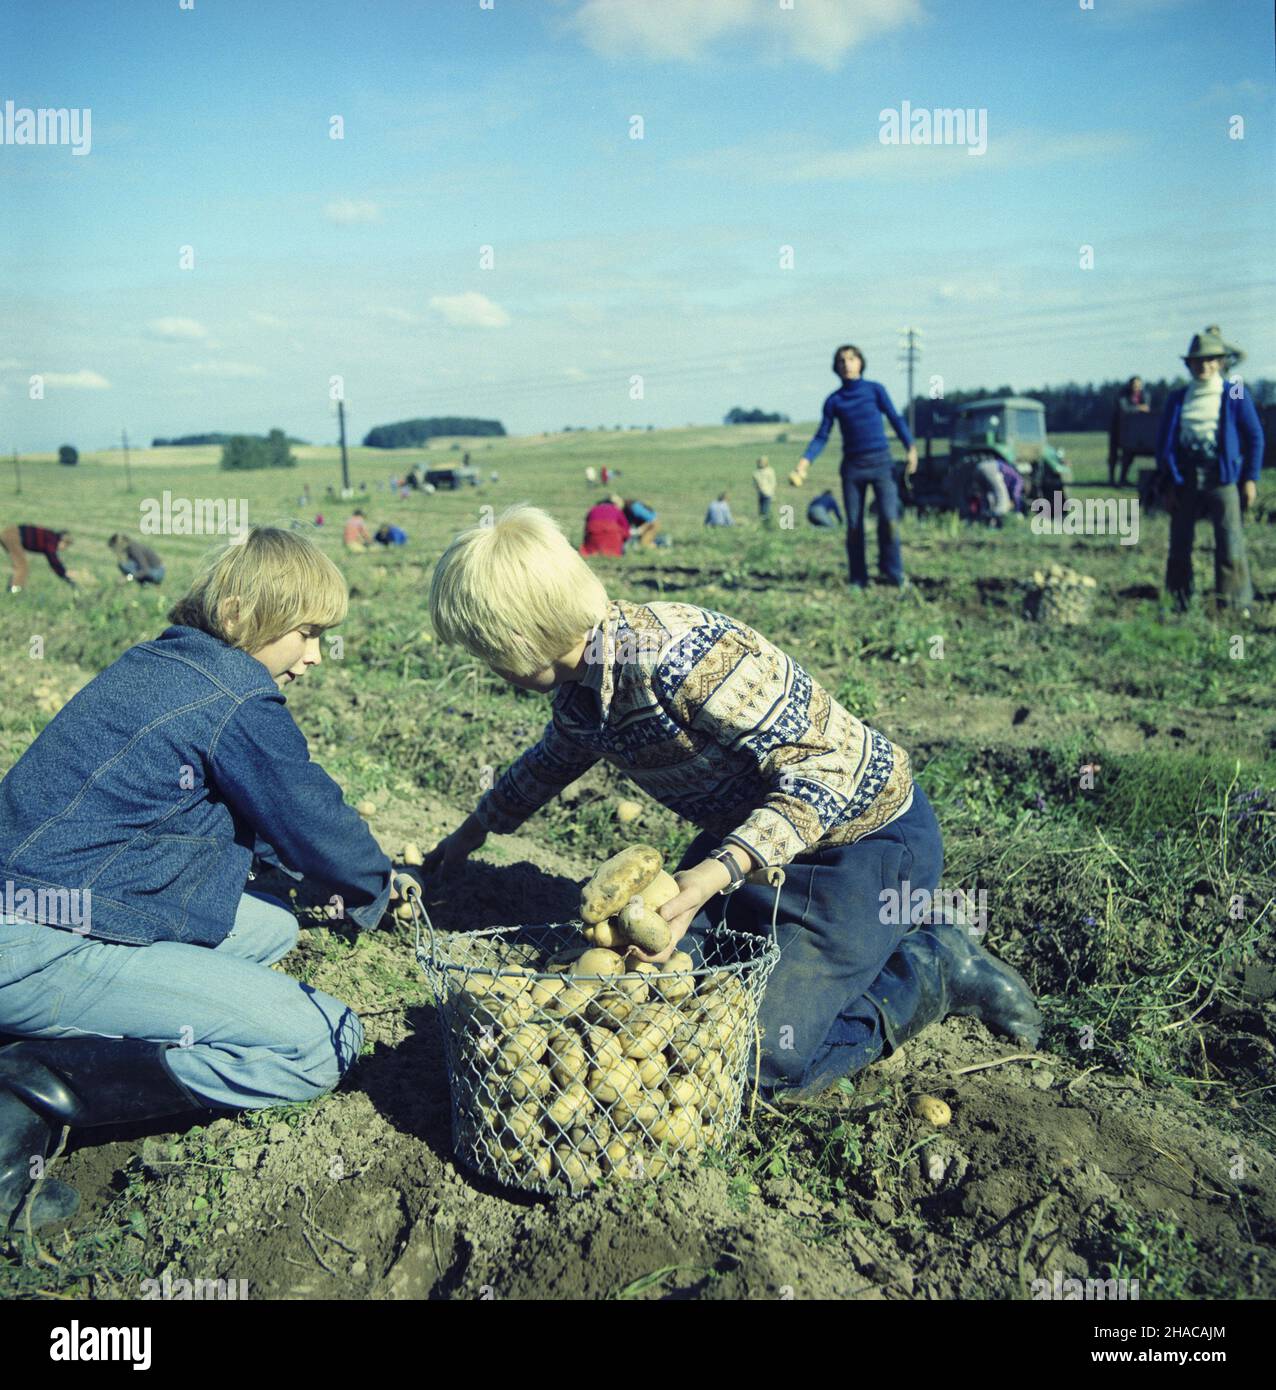 Dylewo 09.1977. Dzieci i m³odzie¿ ze Szko³y Podstawowej nr 3 w Ostródzie pomaga przy wykopkach ziemniaków w Pañstwowym Gospodarstwie Rolnym (PGR Dylewo). js  PAP/Stanis³aw Moroz    Dok³adny dzieñ wydarzenia nieustalony.         Dylewo, September 1977. Pupils of the No 3 Elementary School in Ostroda helping in potato lifting at the Dylewo state farm.  js  PAP/Stanislaw Moroz    Event day unknown Stock Photo